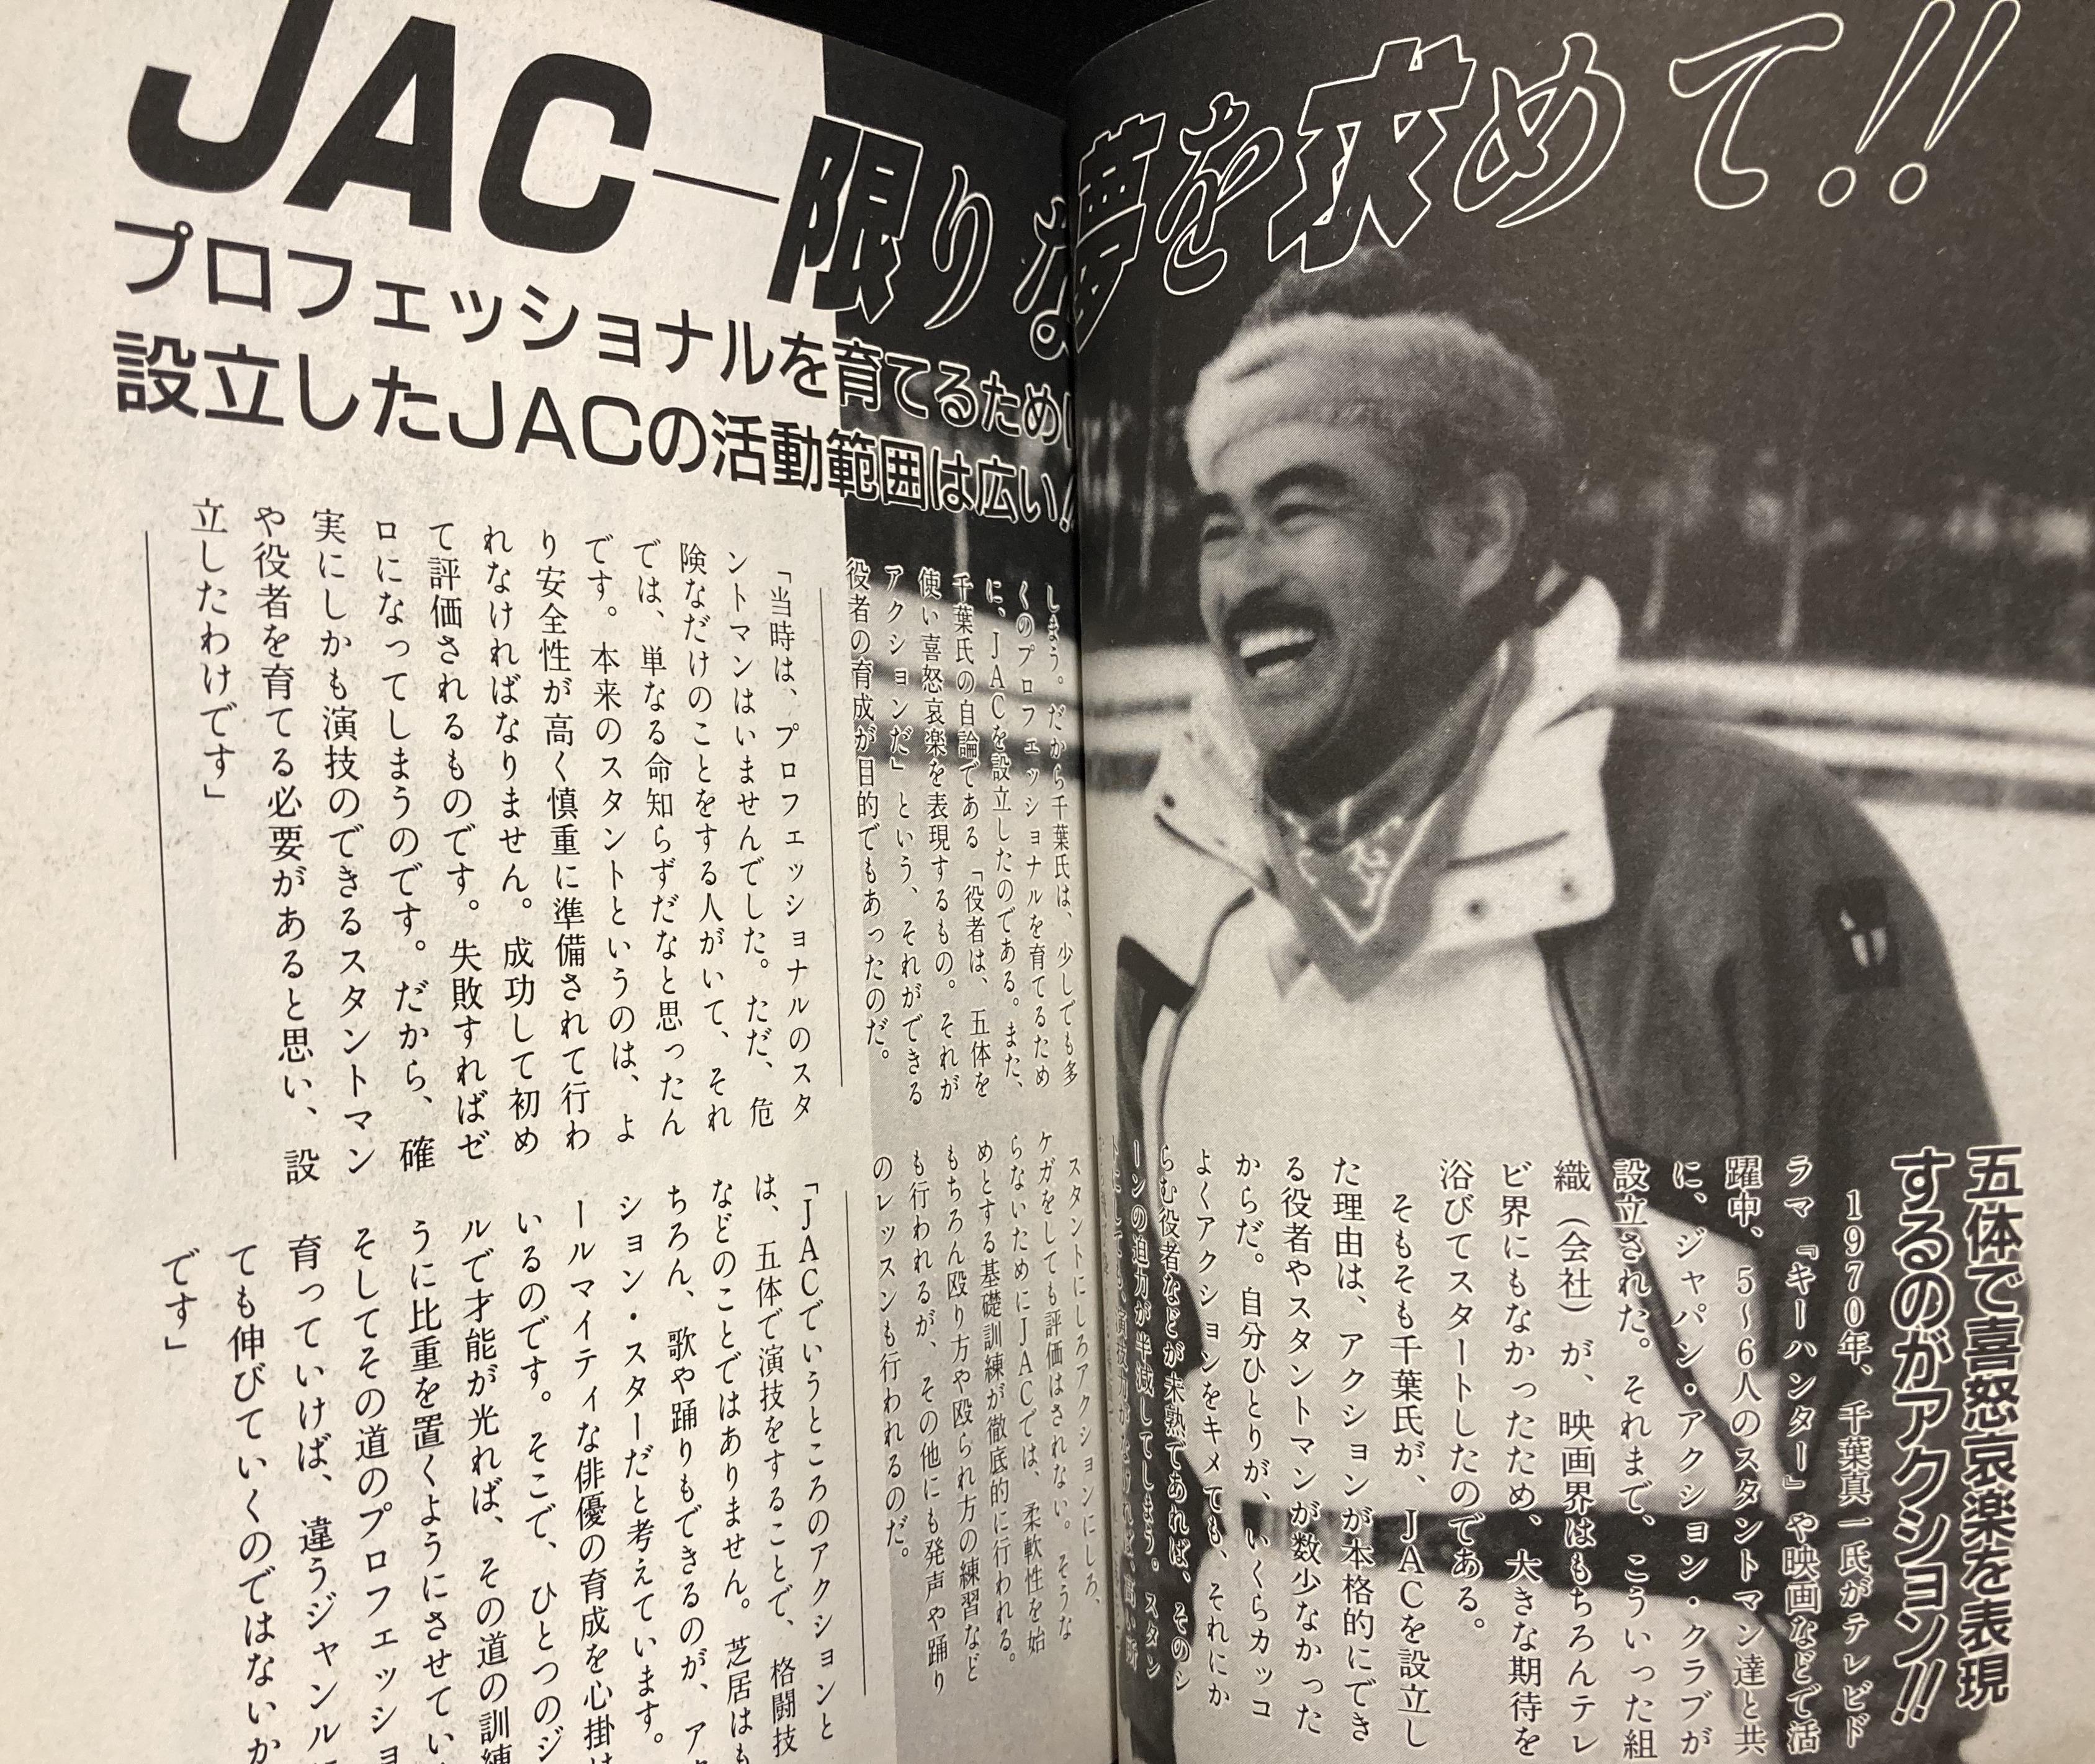 完璧 JAC ジャパンアクションクラブ ケイブンシャの大百科別冊 econet.bi